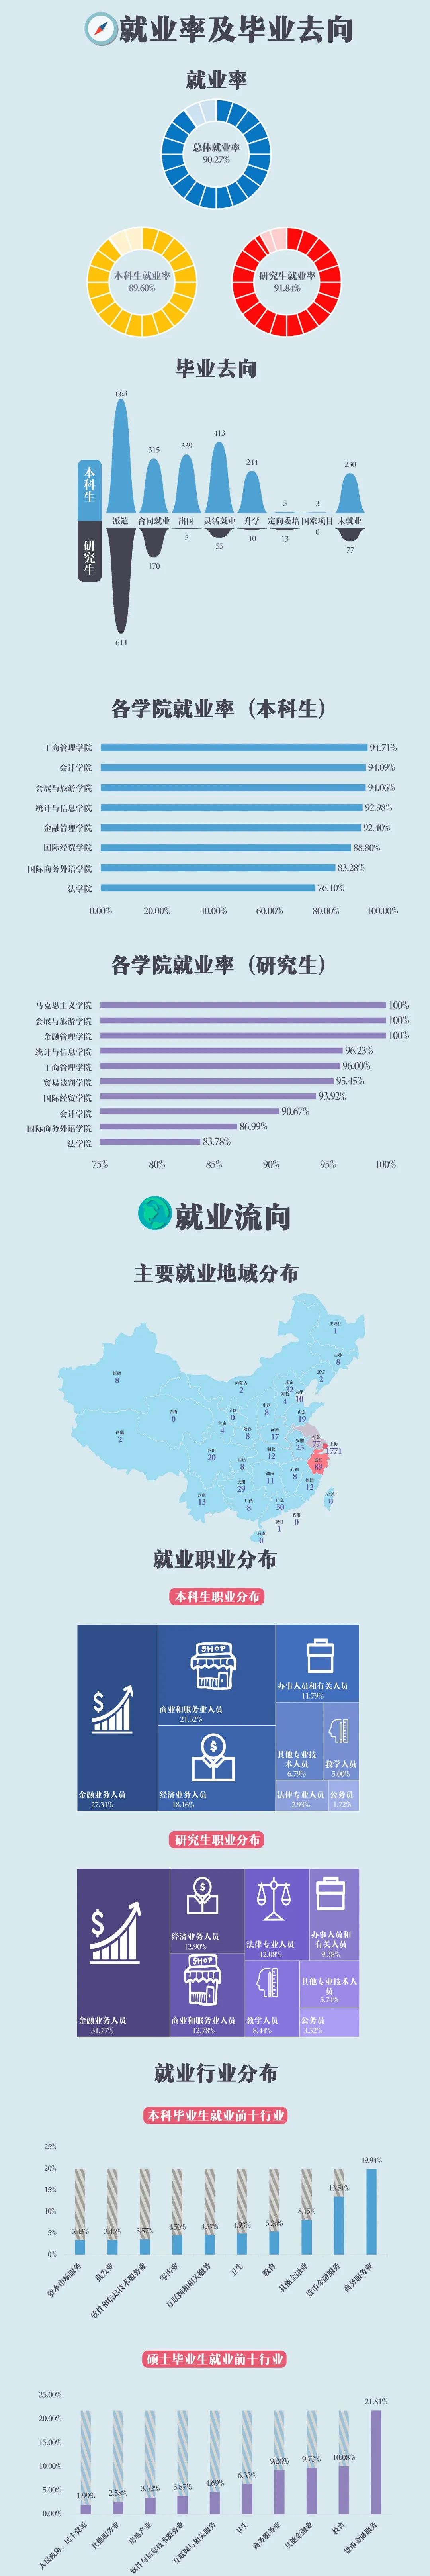 上海对外经贸大学2020届毕业生就业质量报告